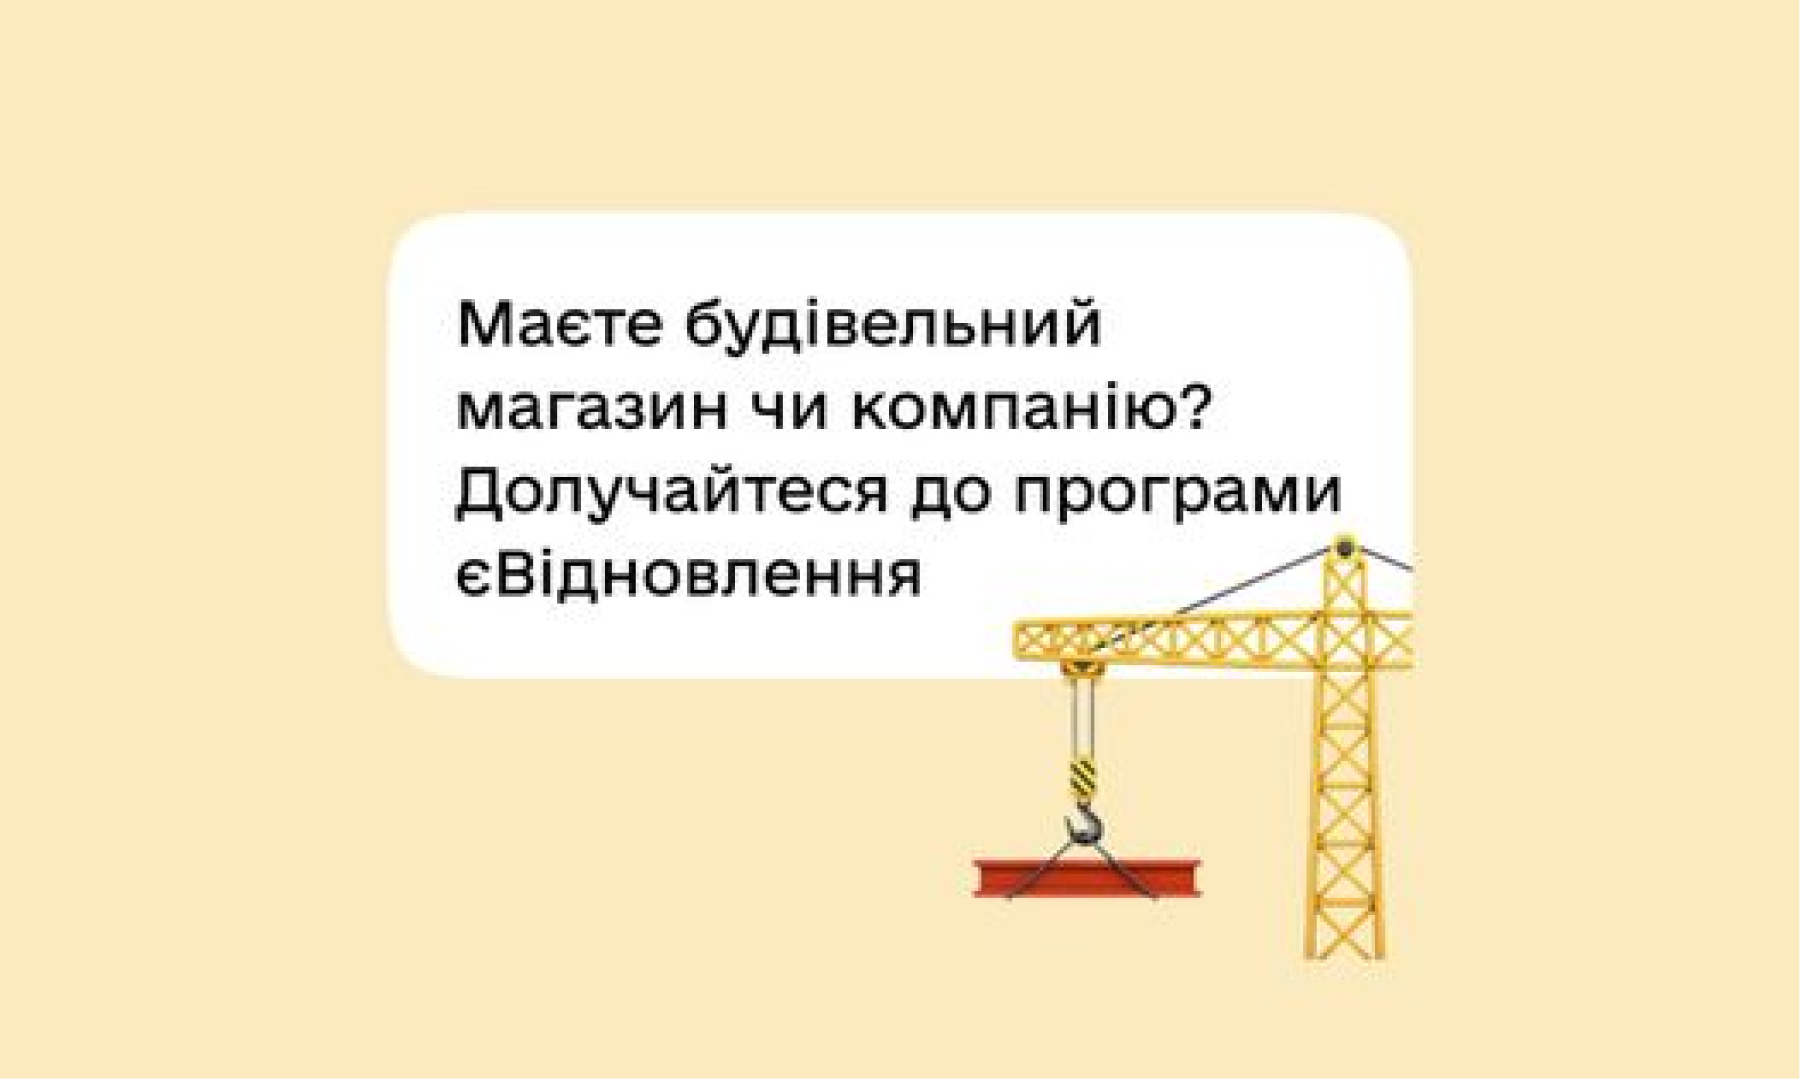 єВідновлення: українці зможуть придбати за отримані кошти будівельні товари чи оплатити ремонтні послуги в компаній-учасників програми